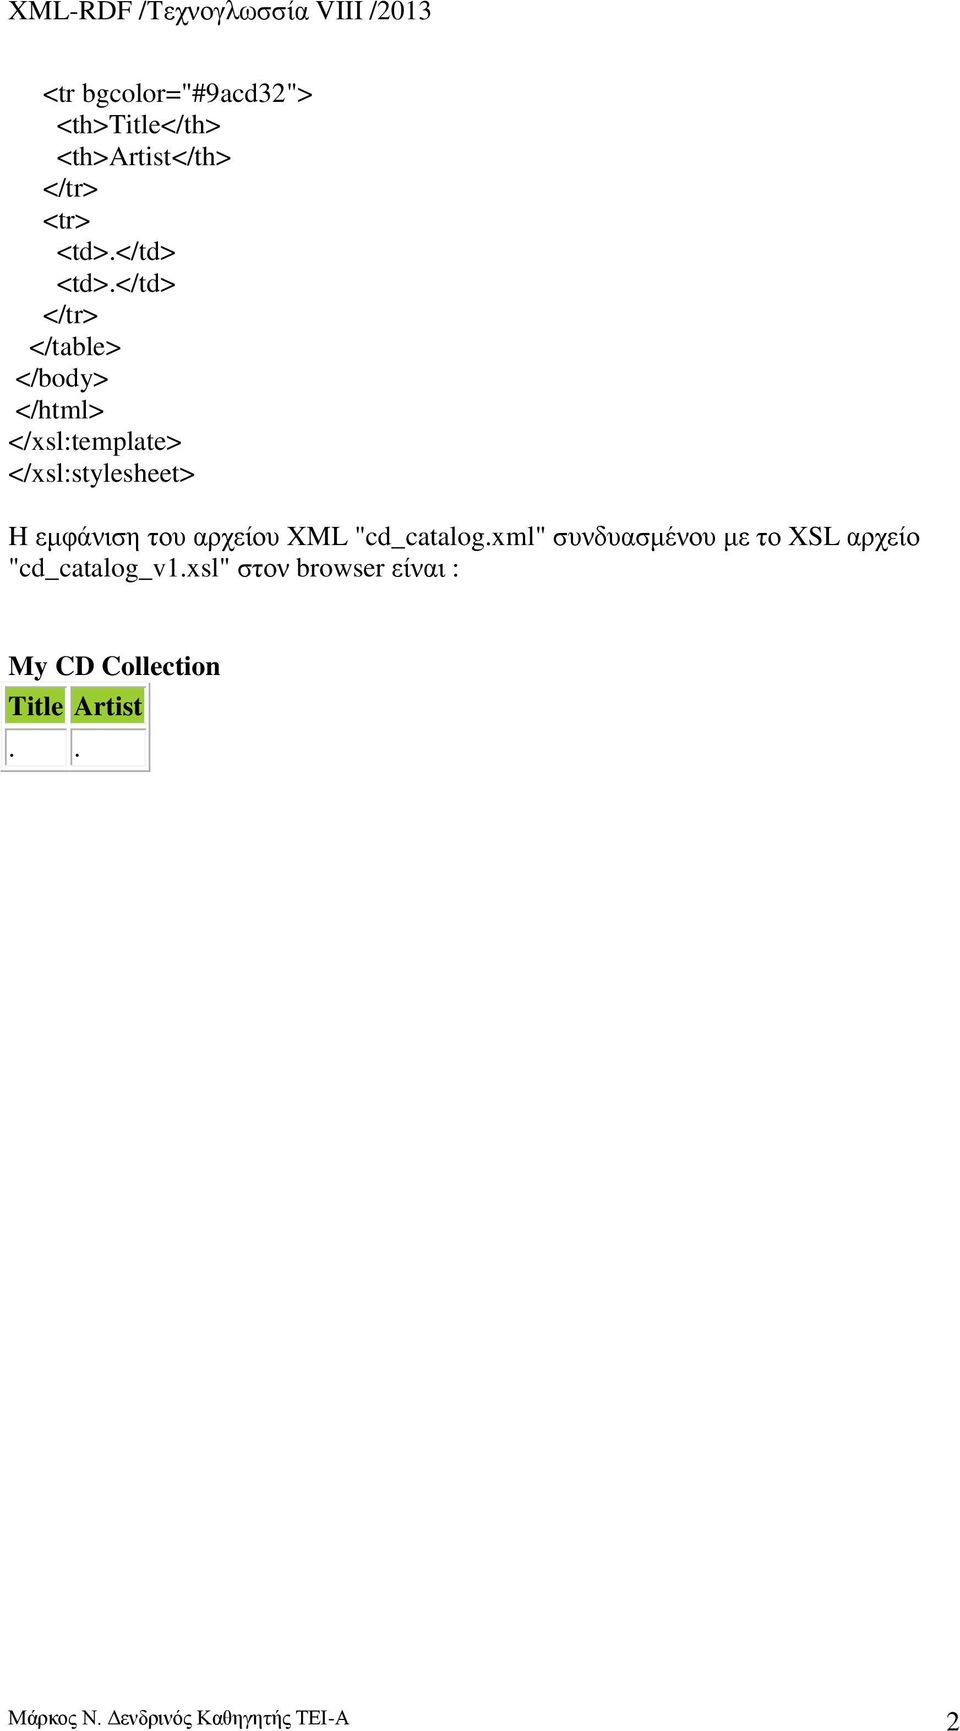 του αρχείου XML "cd_catalog.xml" συνδυασμένου με το XSL αρχείο "cd_catalog_v1.